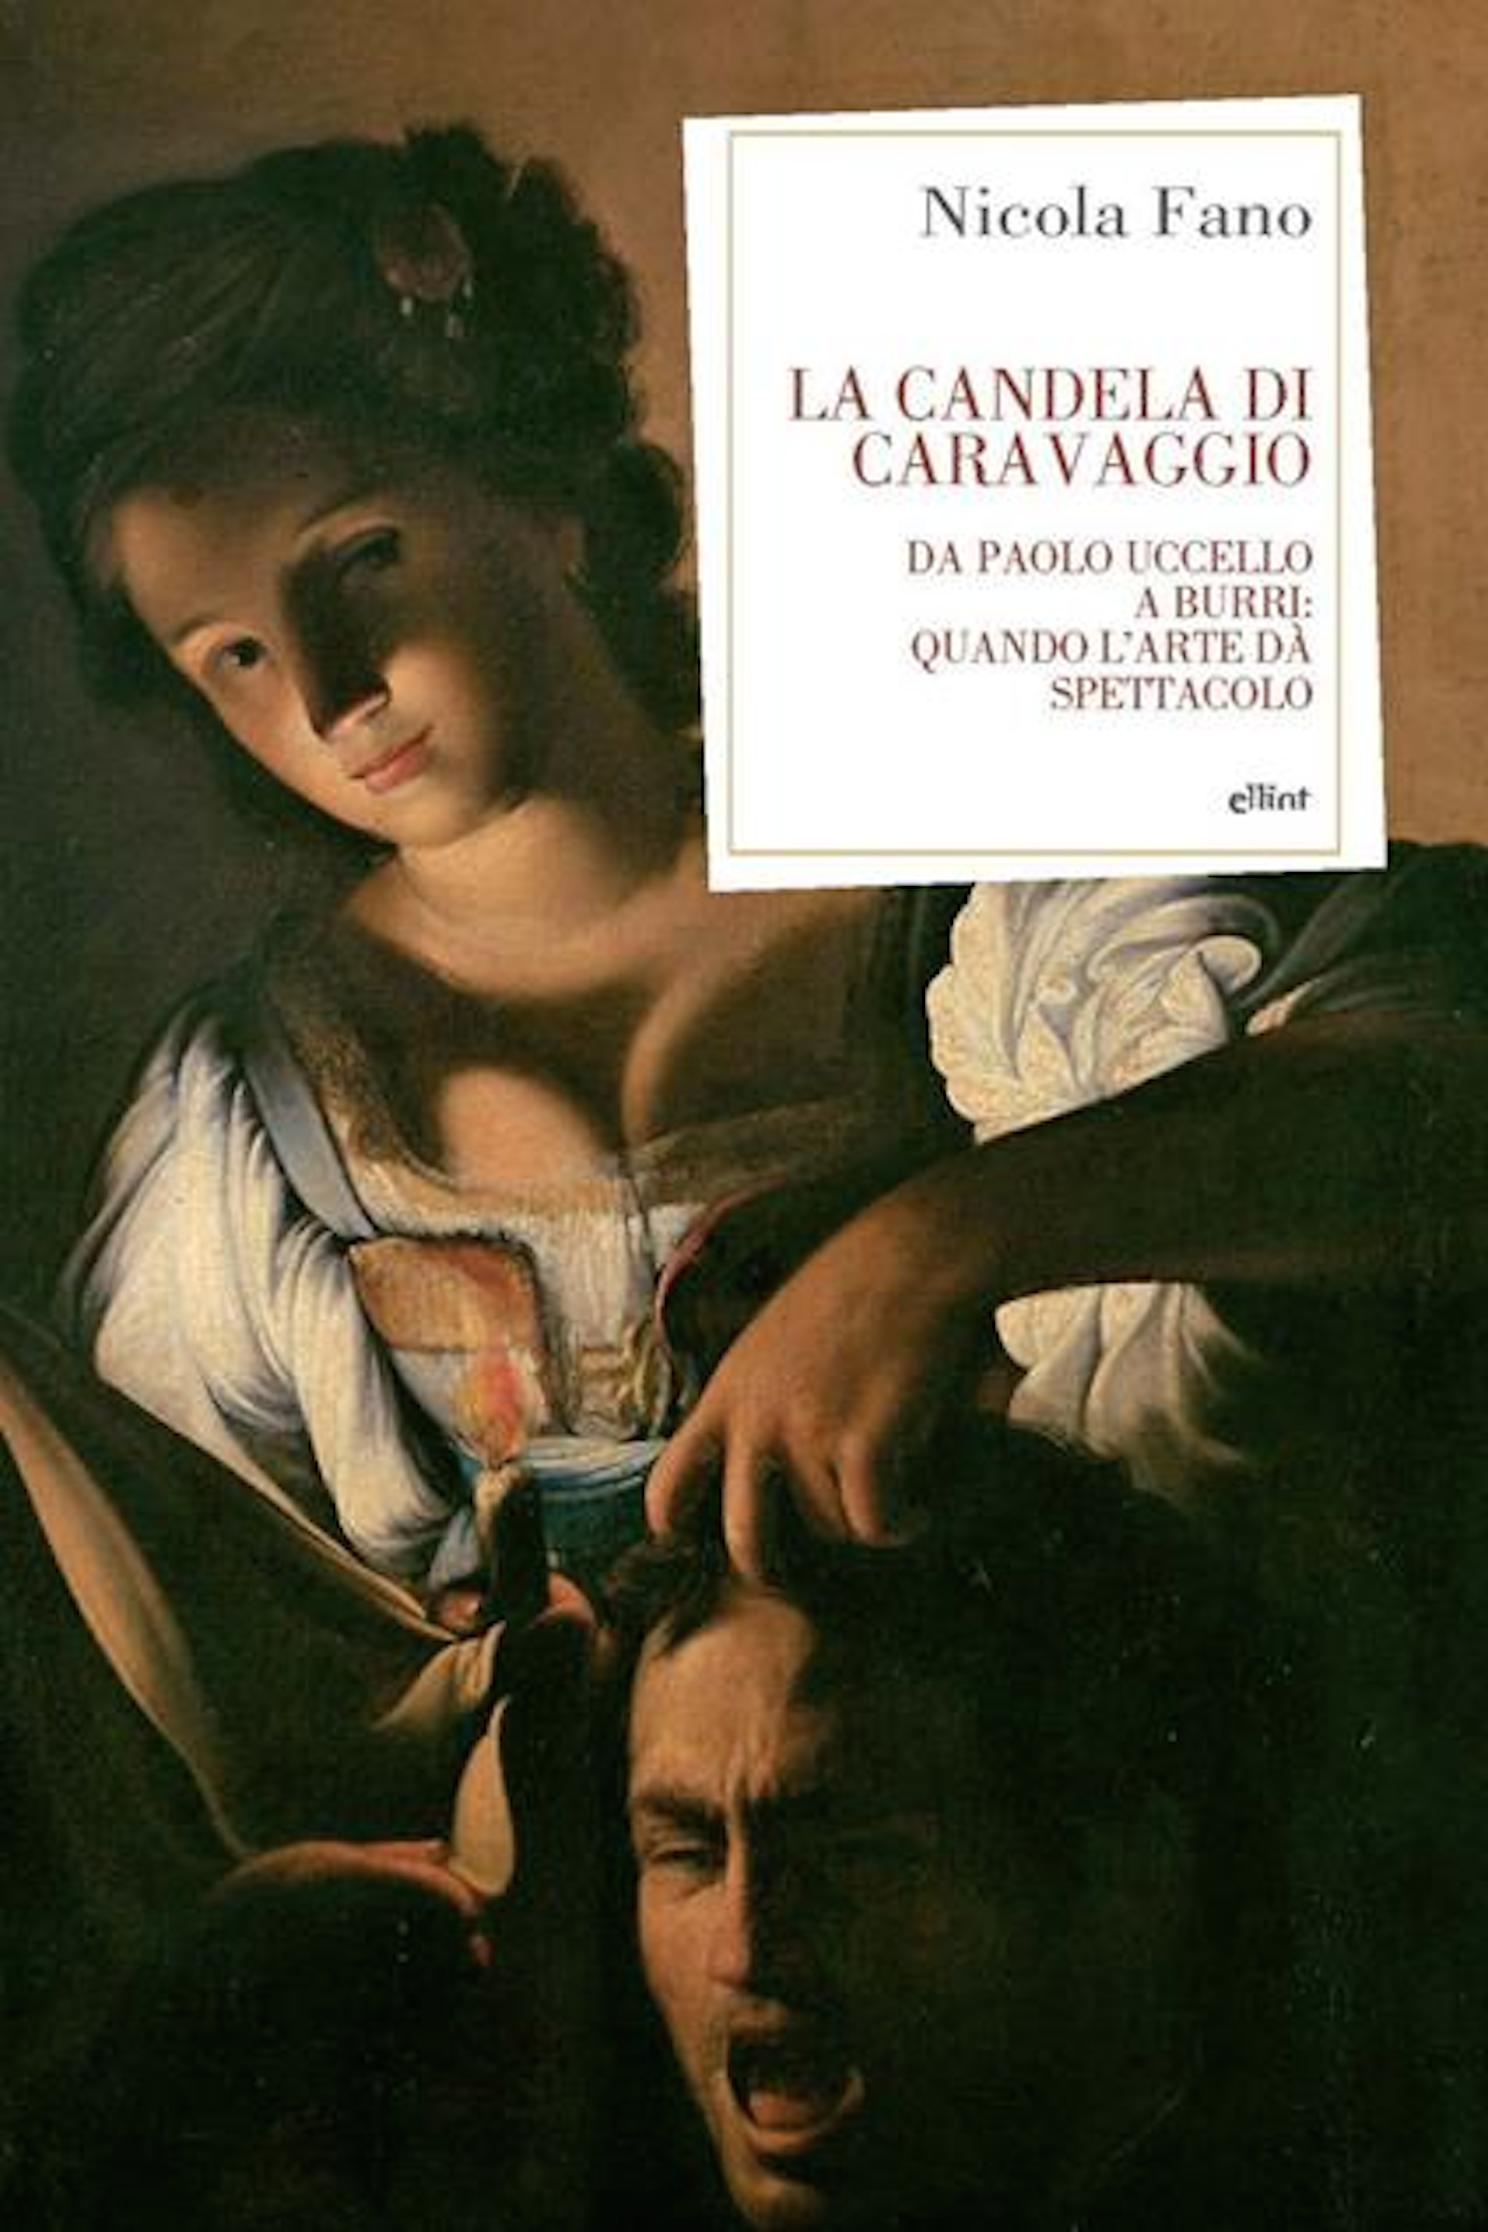 Mercoledì 1° giugno, h.19 a Salerno, al Teatro Ghirelli “La candela di Caravaggio” di Nicola Fano